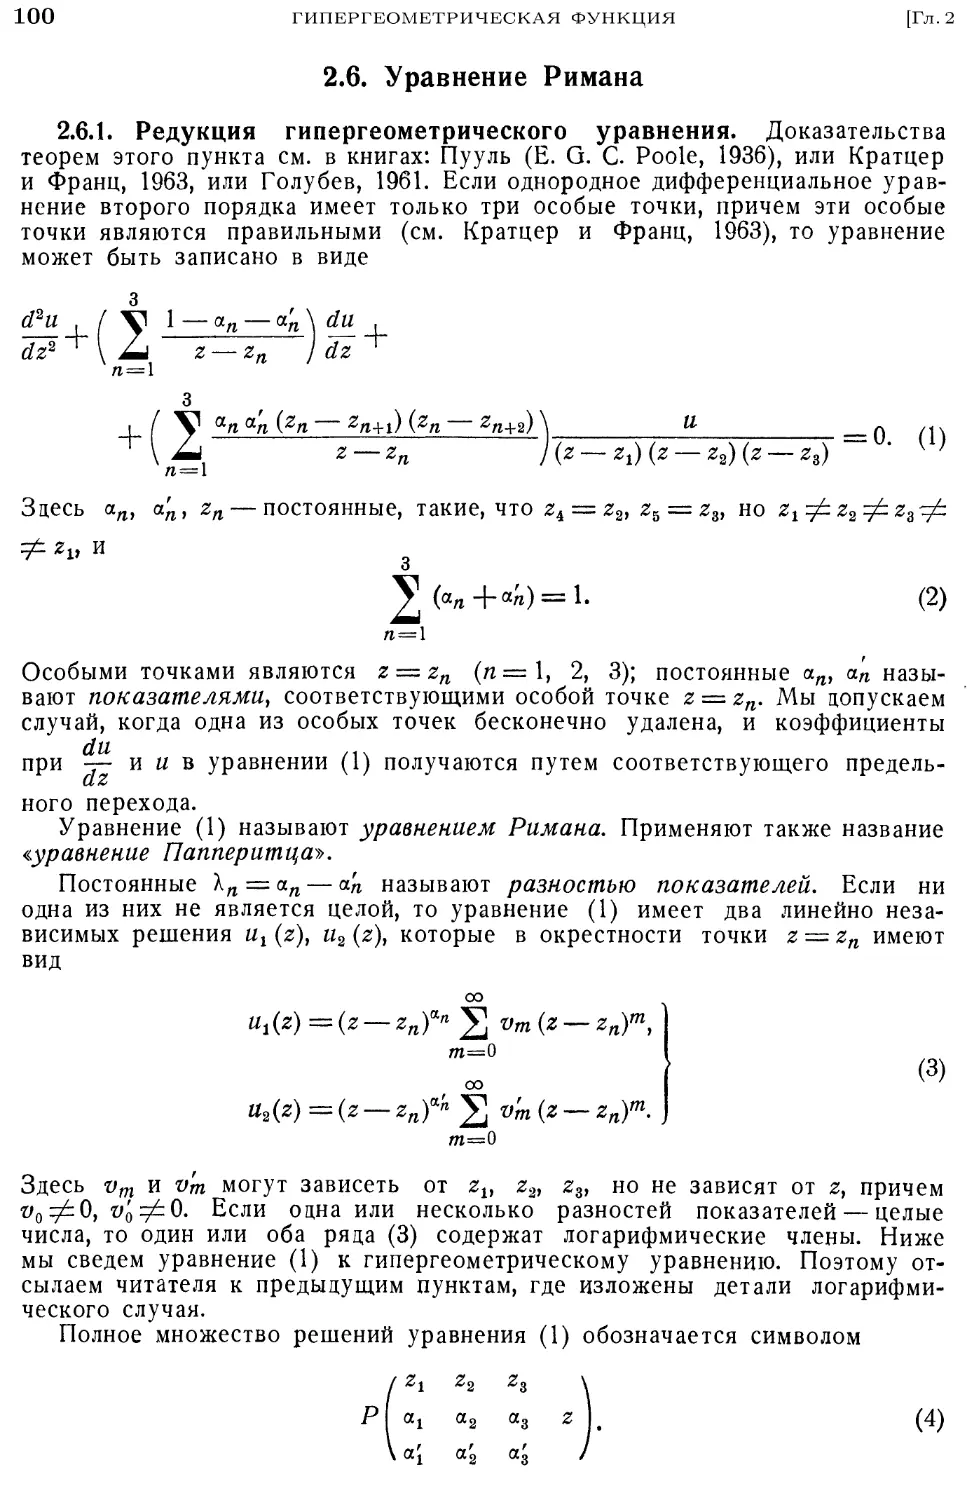 2.6. Уравнение Римана